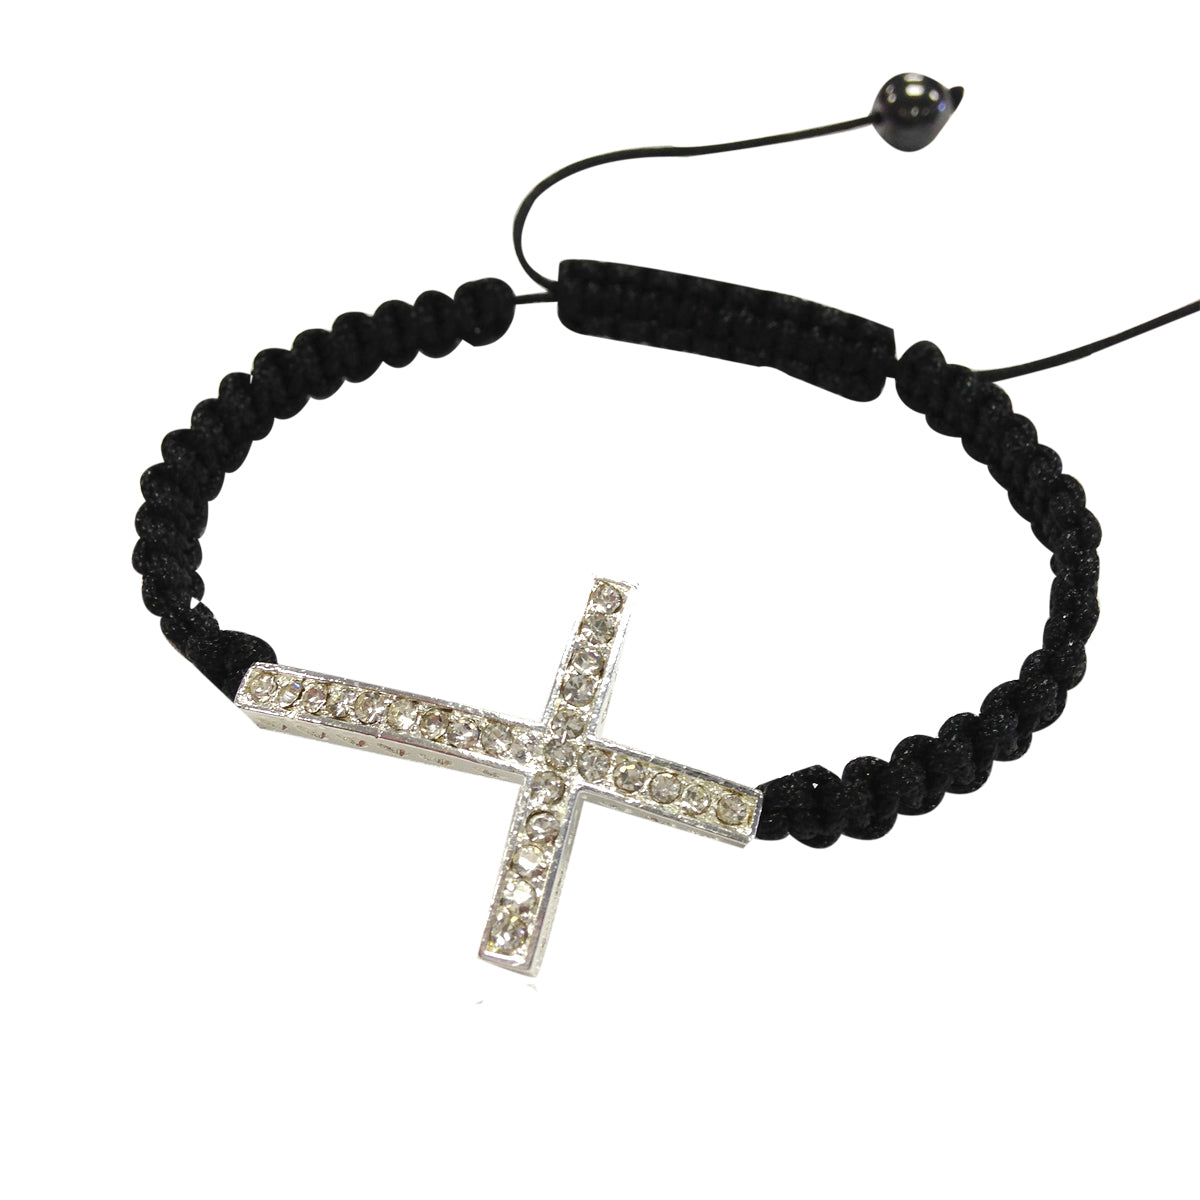 Bracelet Rhinestone with Studded Sideways Cross